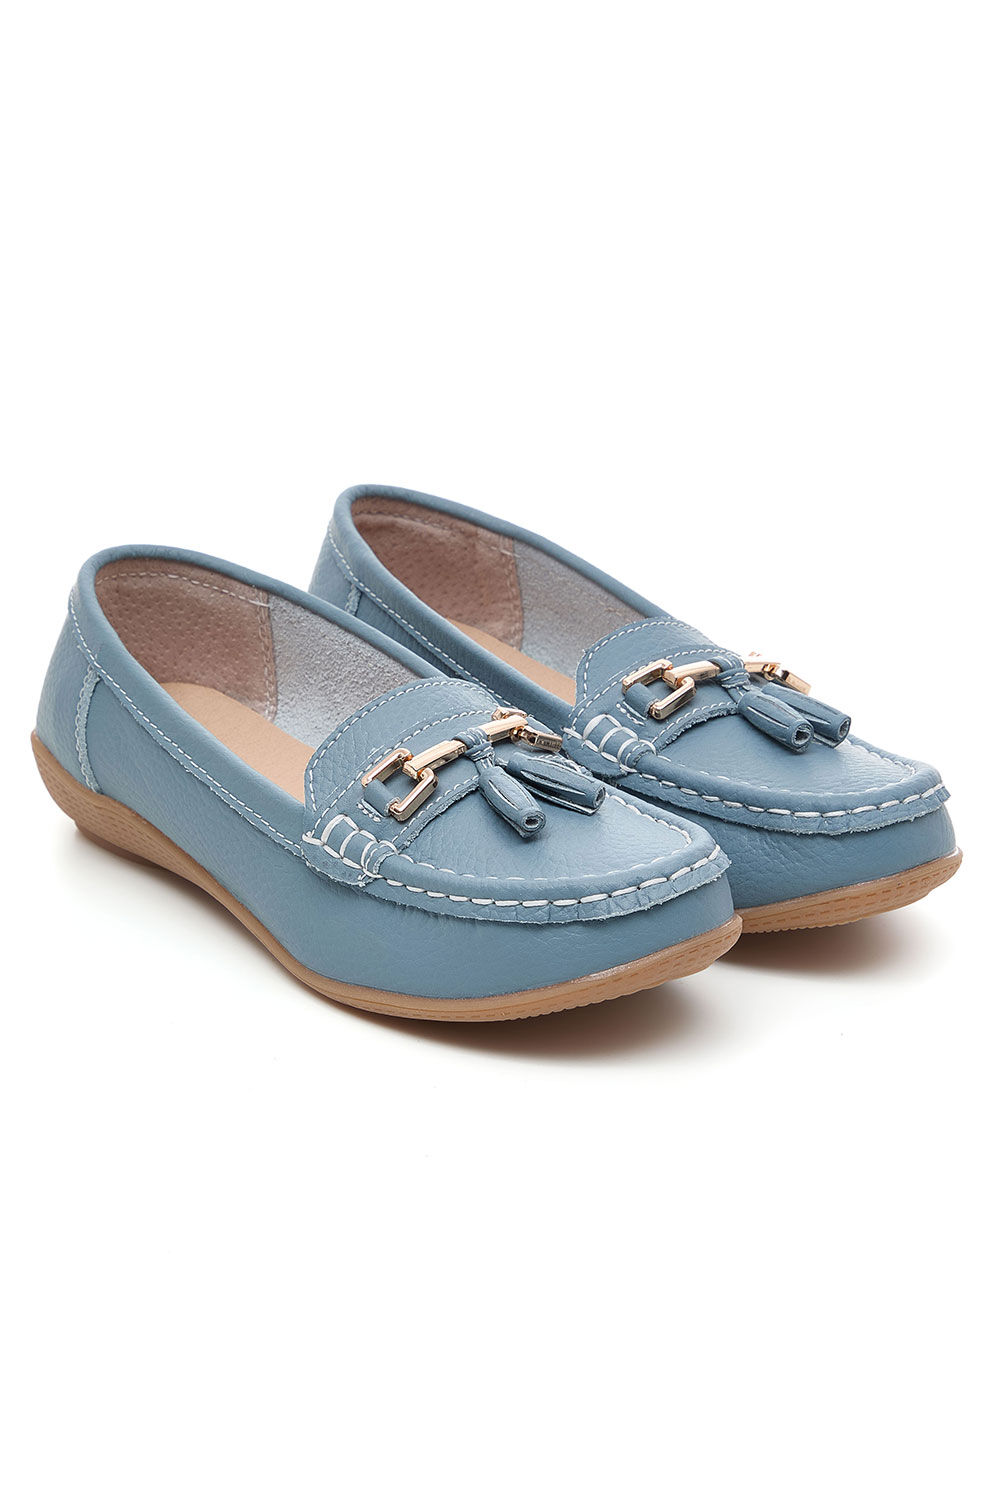 Jo & Joe Women’s Blue Leather Moccasin Shoes with Tassel Detail, Size: 8